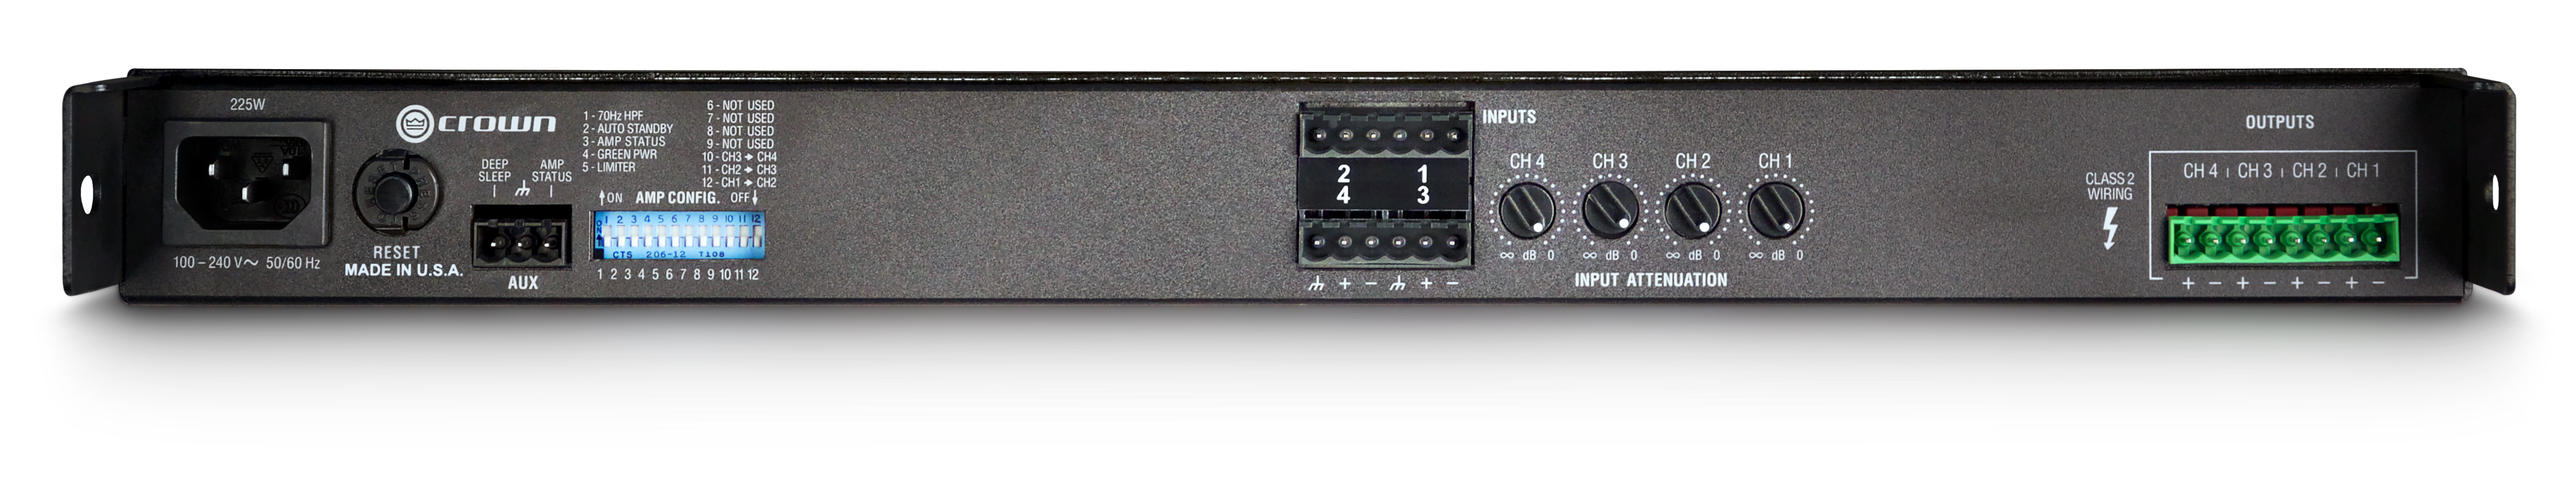 CROWN CT 4150 Amplificador de potencia 4 canales, 125W 4 Ω por canal de salida